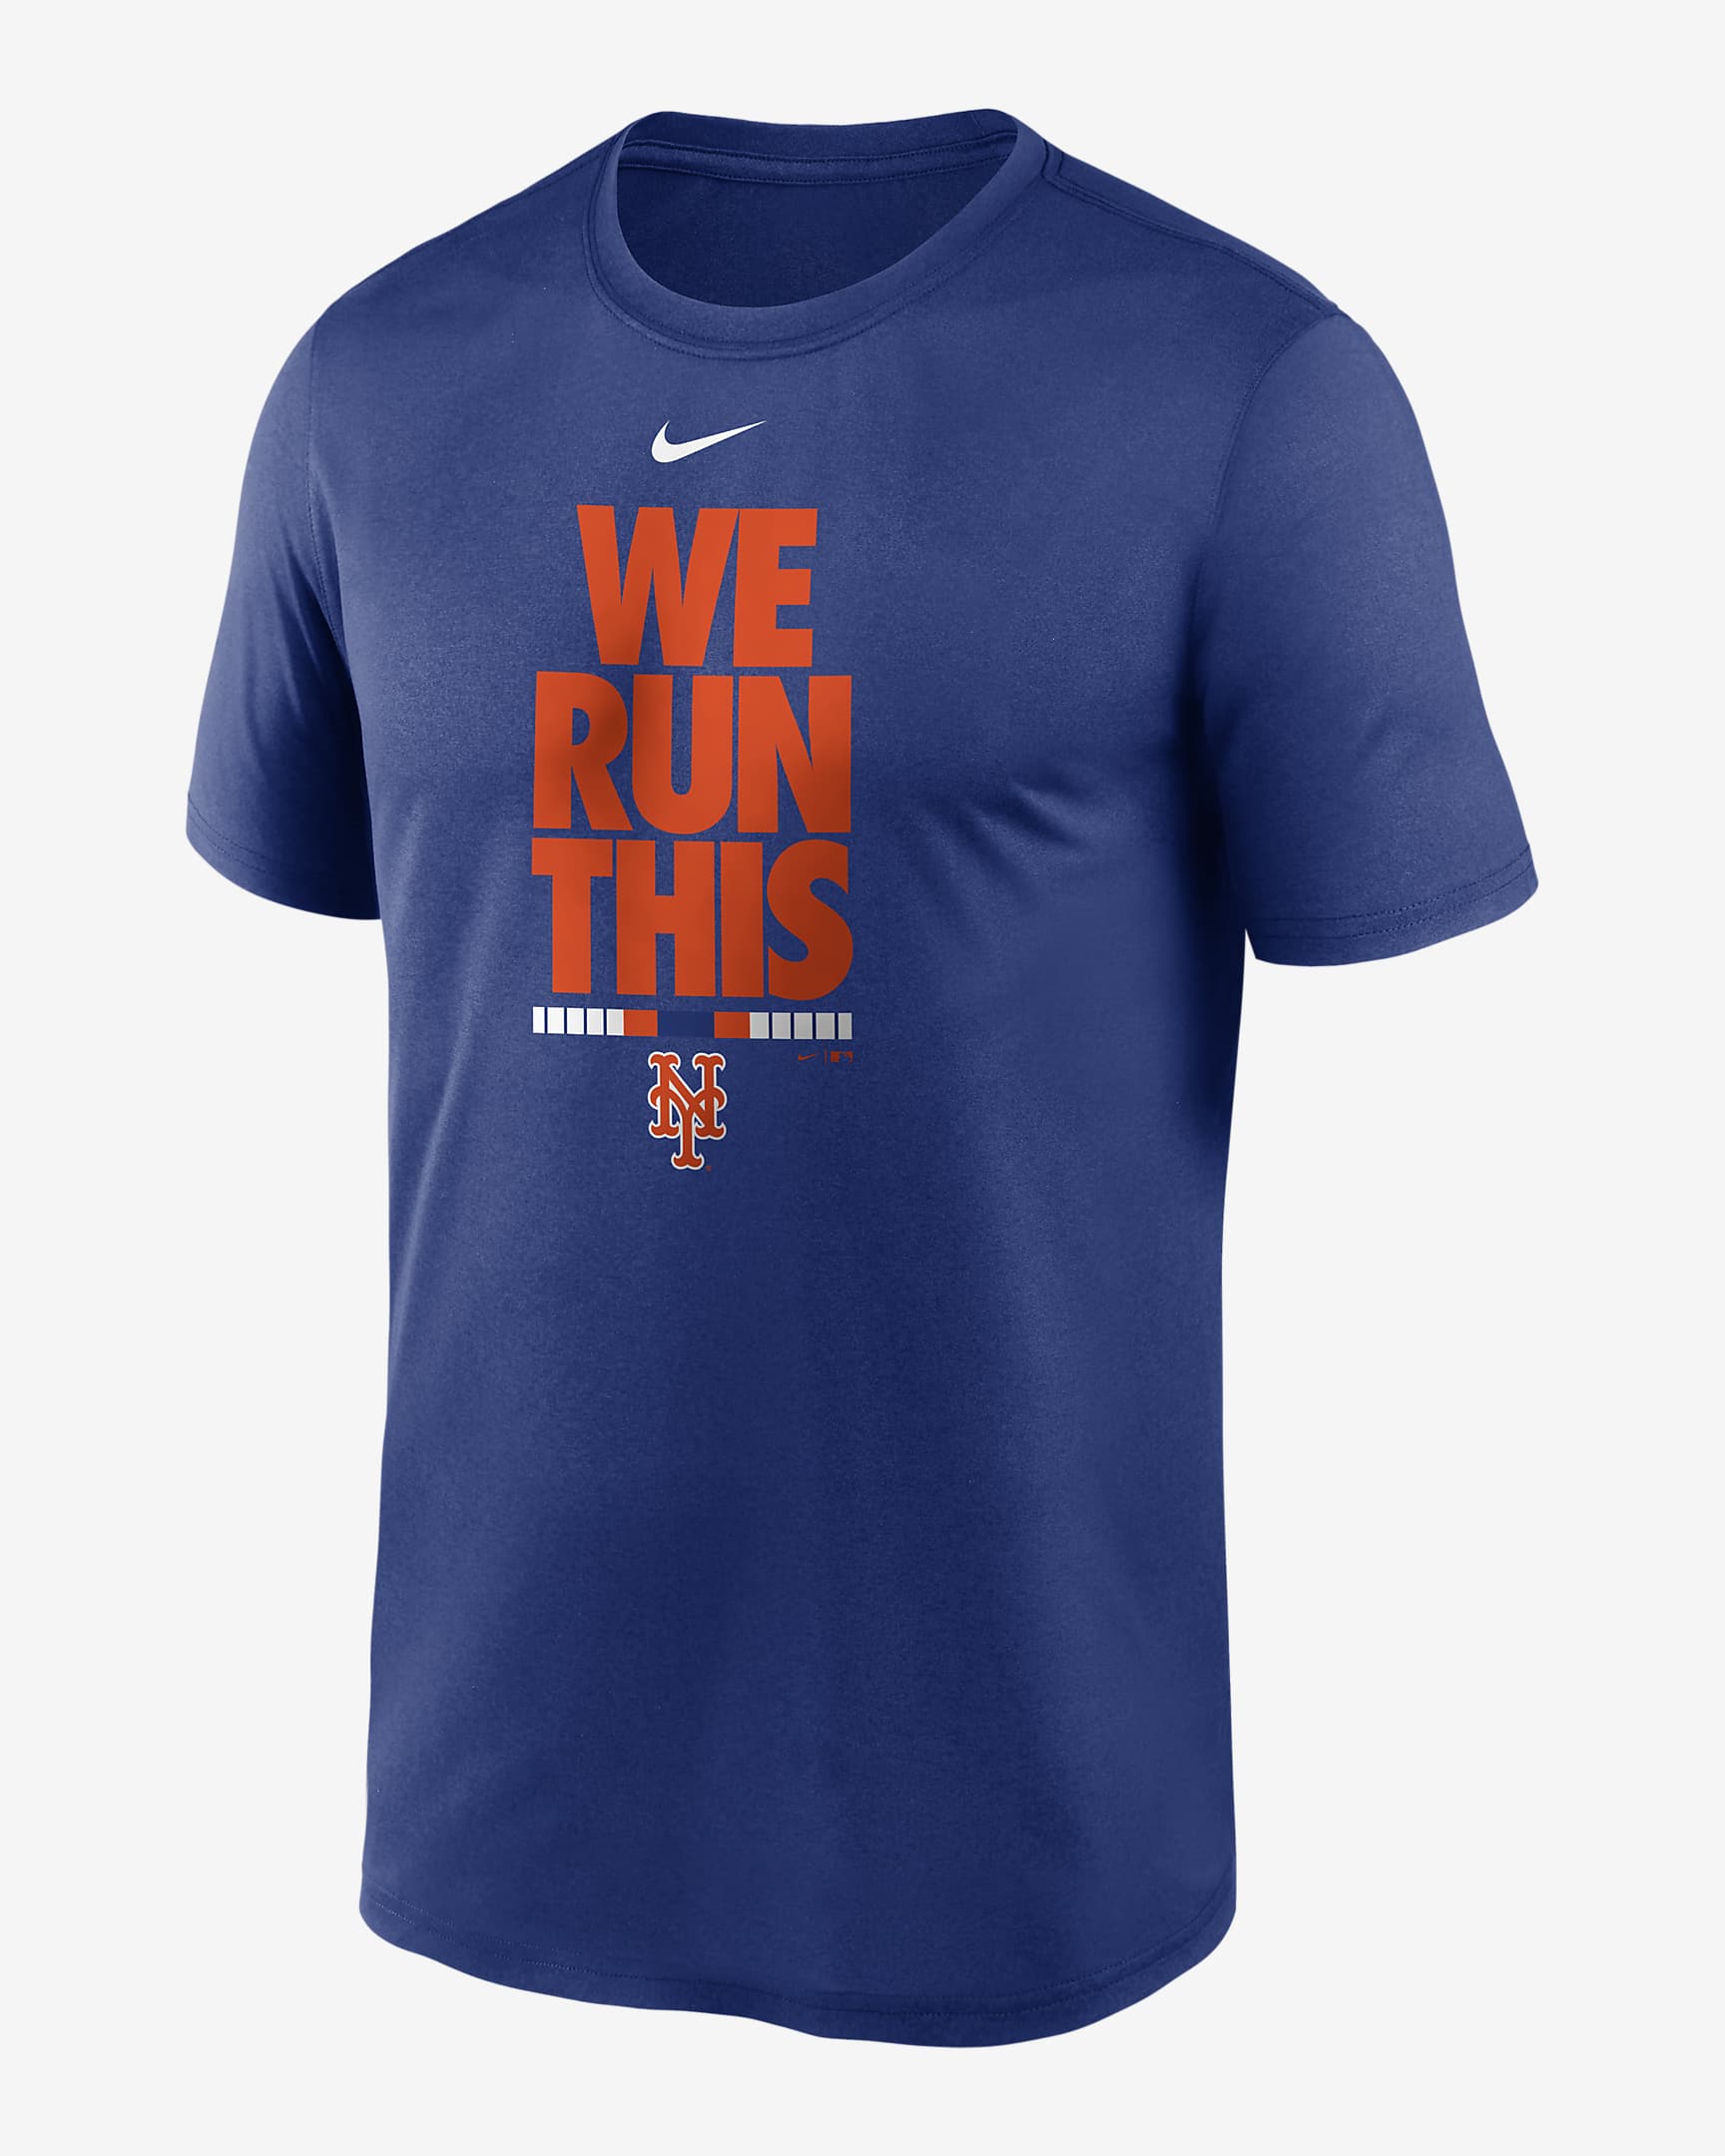 Nike (MLB New York Mets) Big Kids' (Boys') T-Shirt. Nike.com